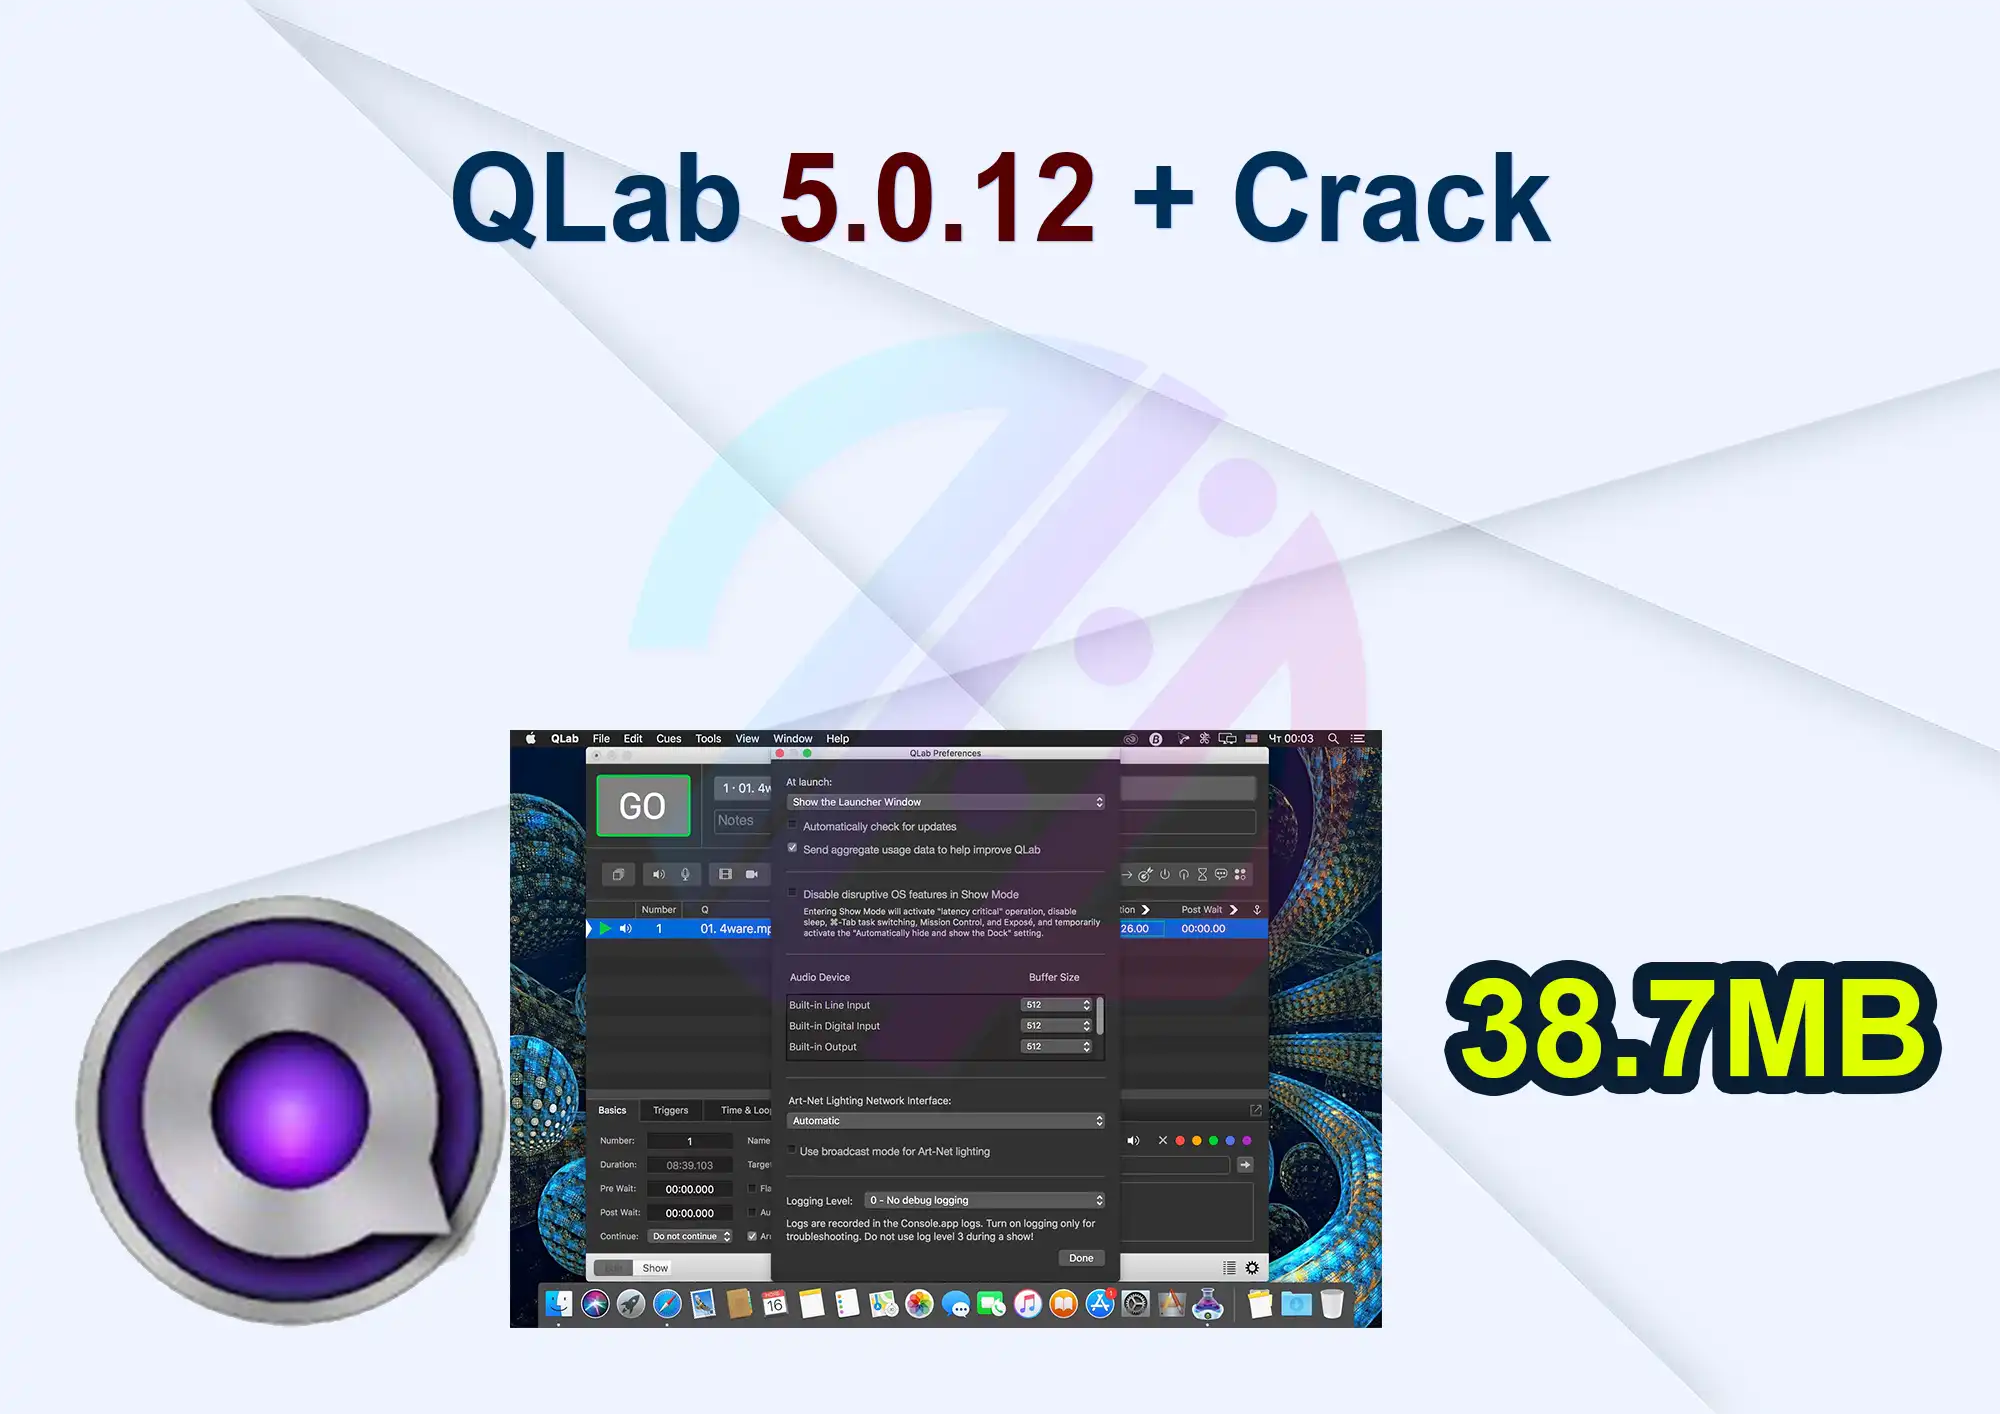 QLab 5.0.12 + Crack